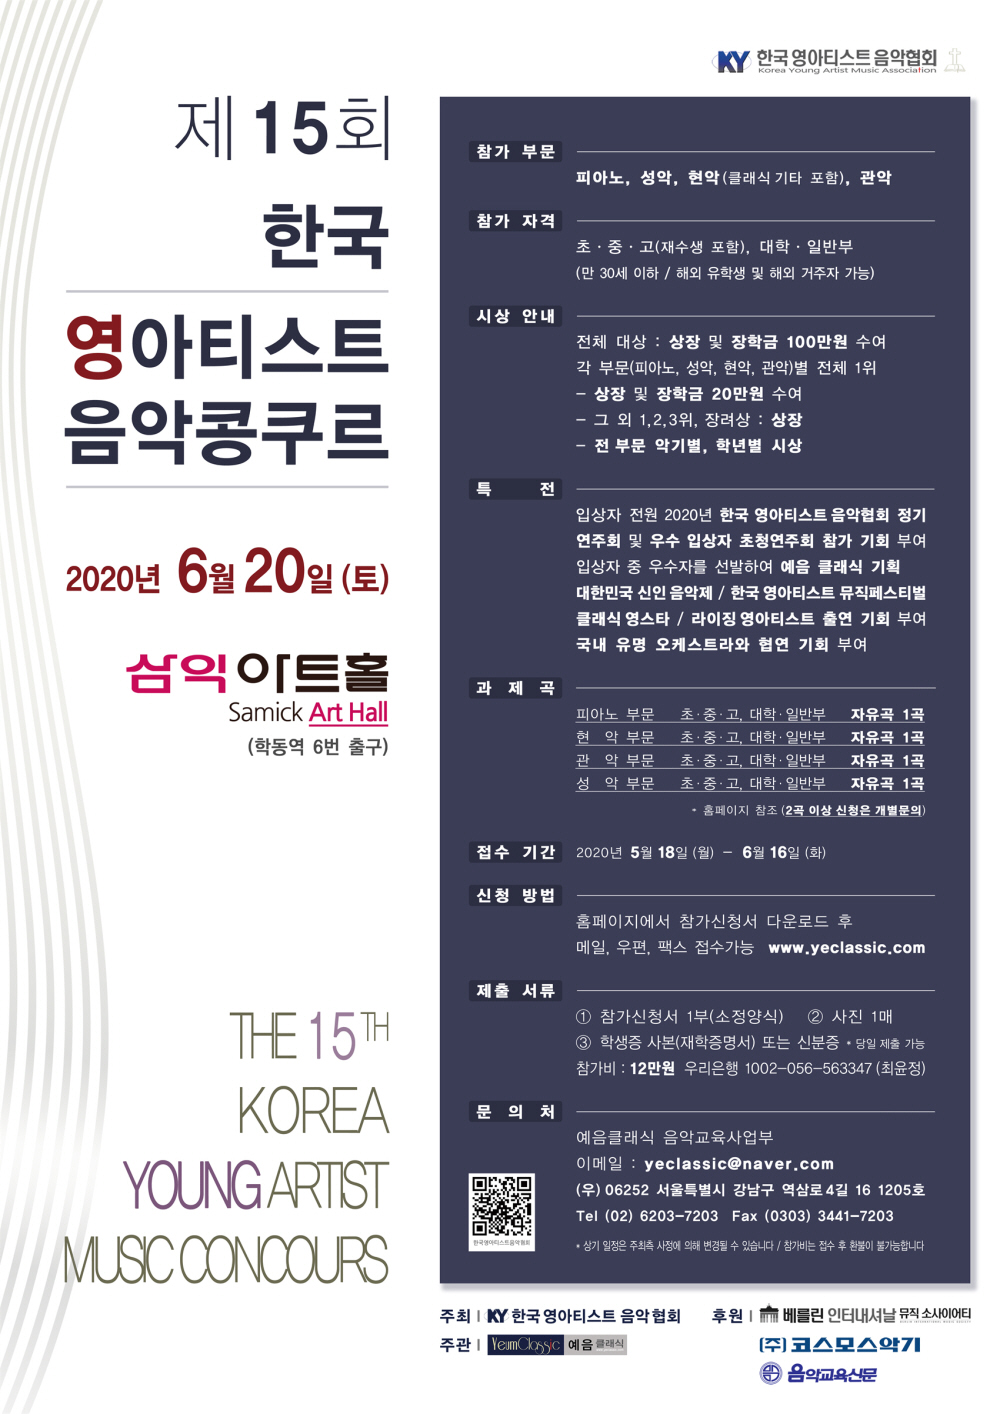 15회 한국영아티스트 음악콩쿠르 포스터 1000.jpg